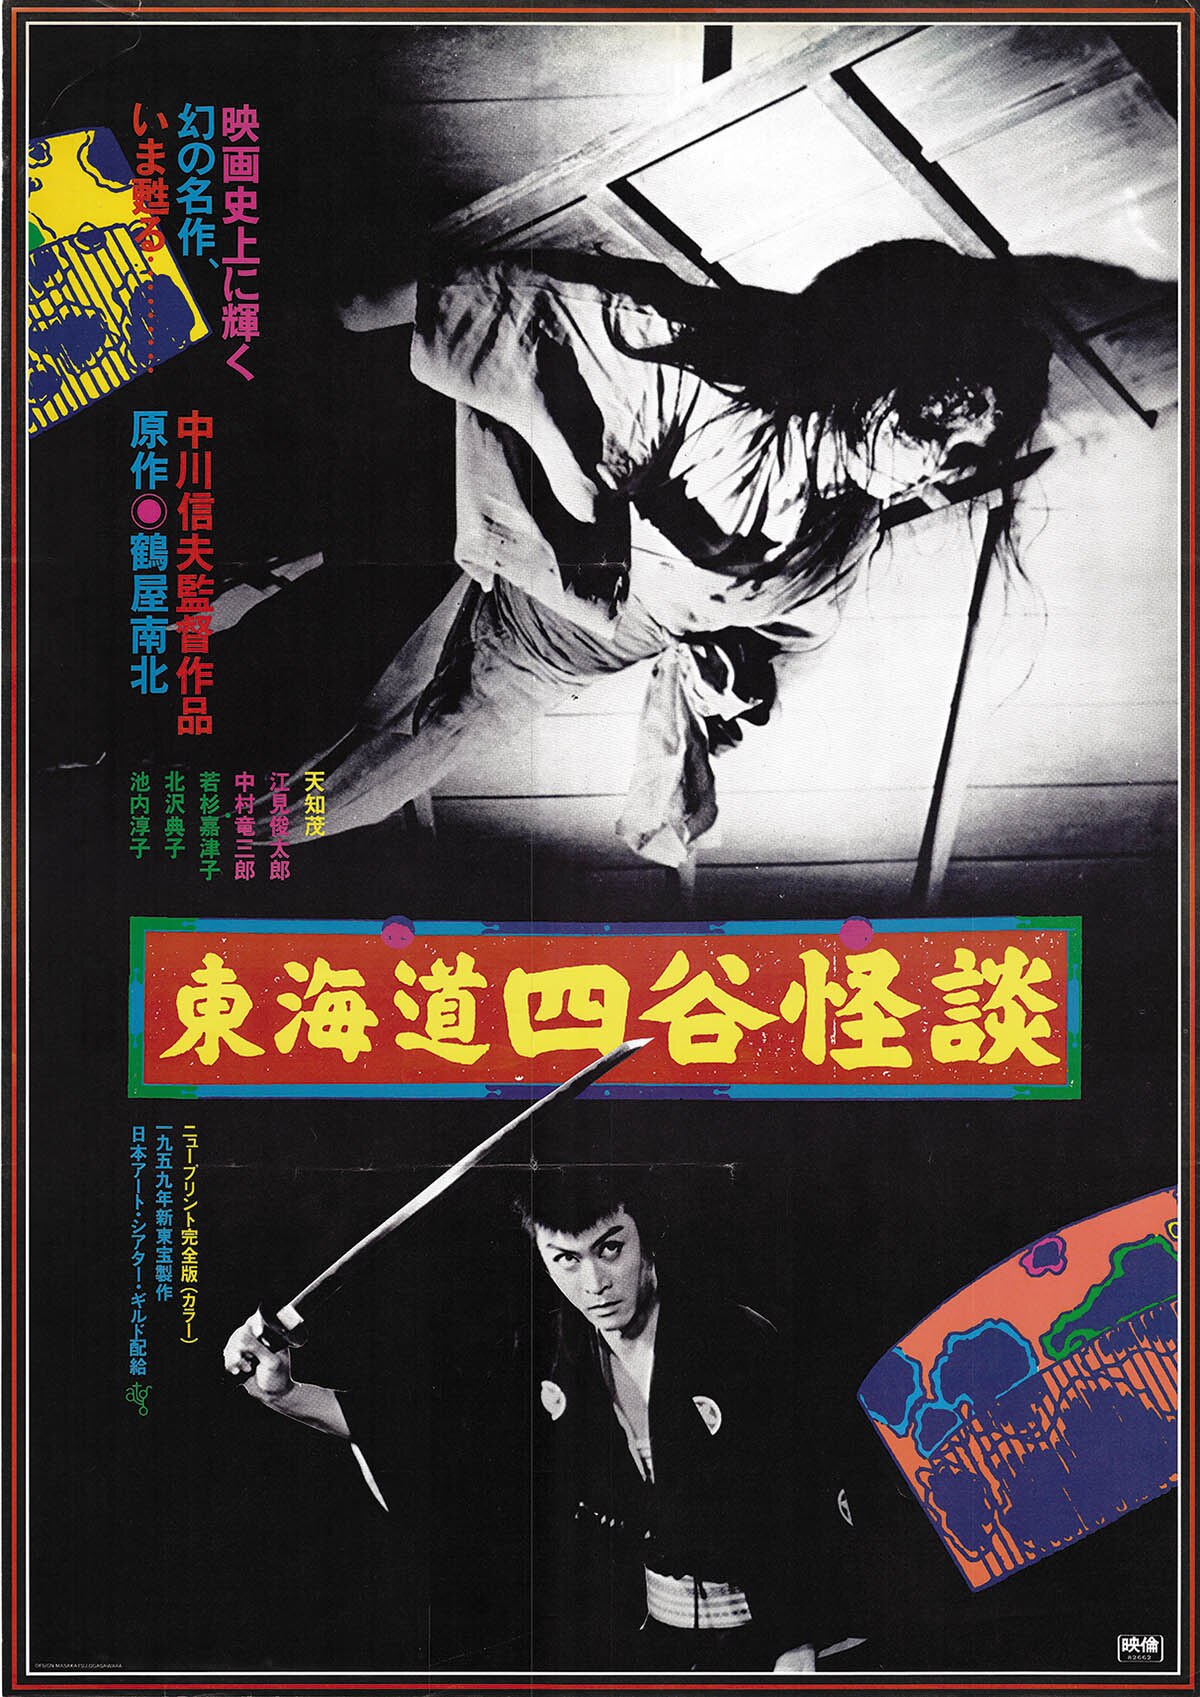 Tokaido Yotsuya Kaidan Poster